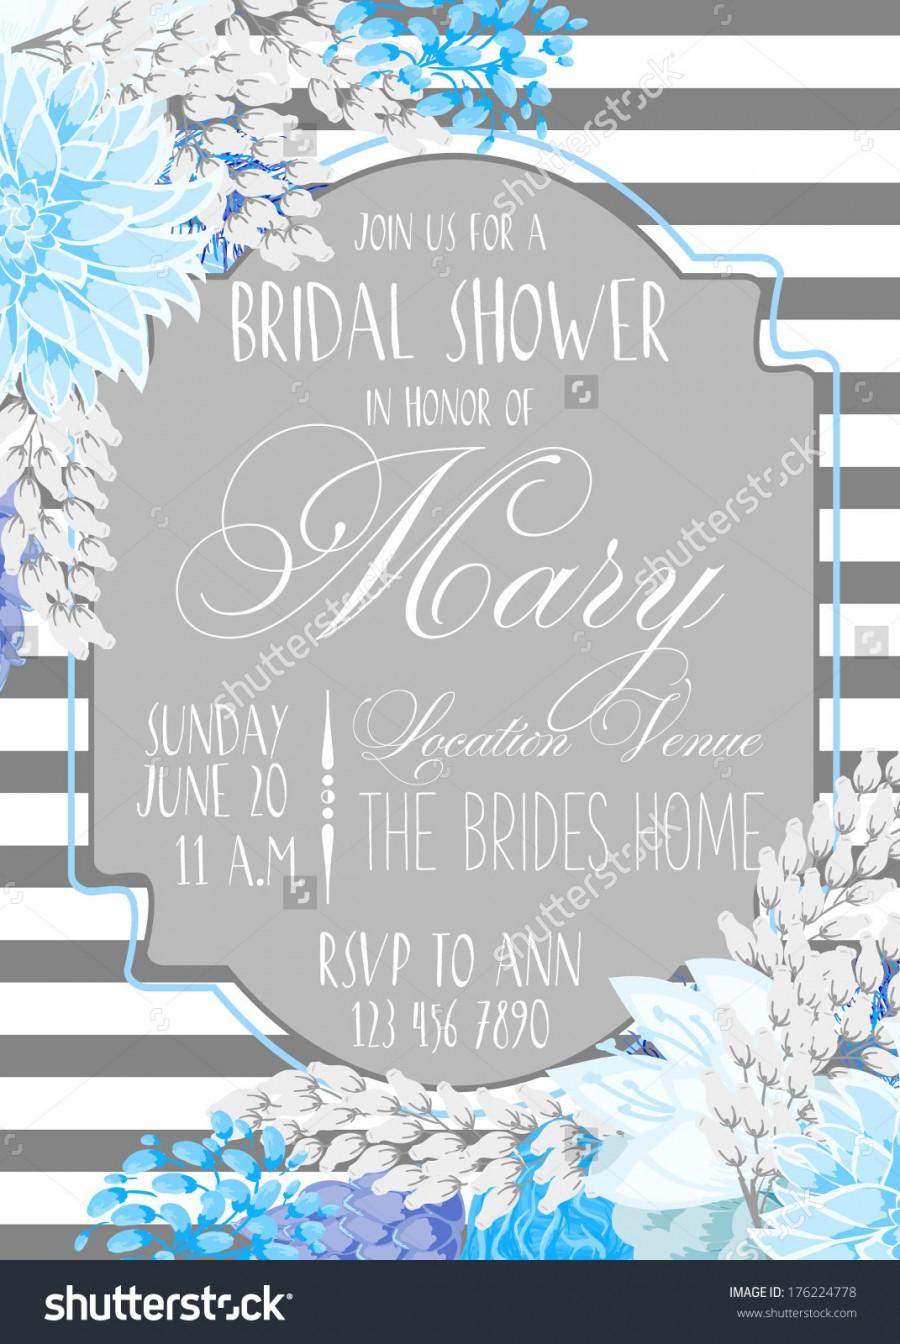 Wedding - Bridal Shower Card